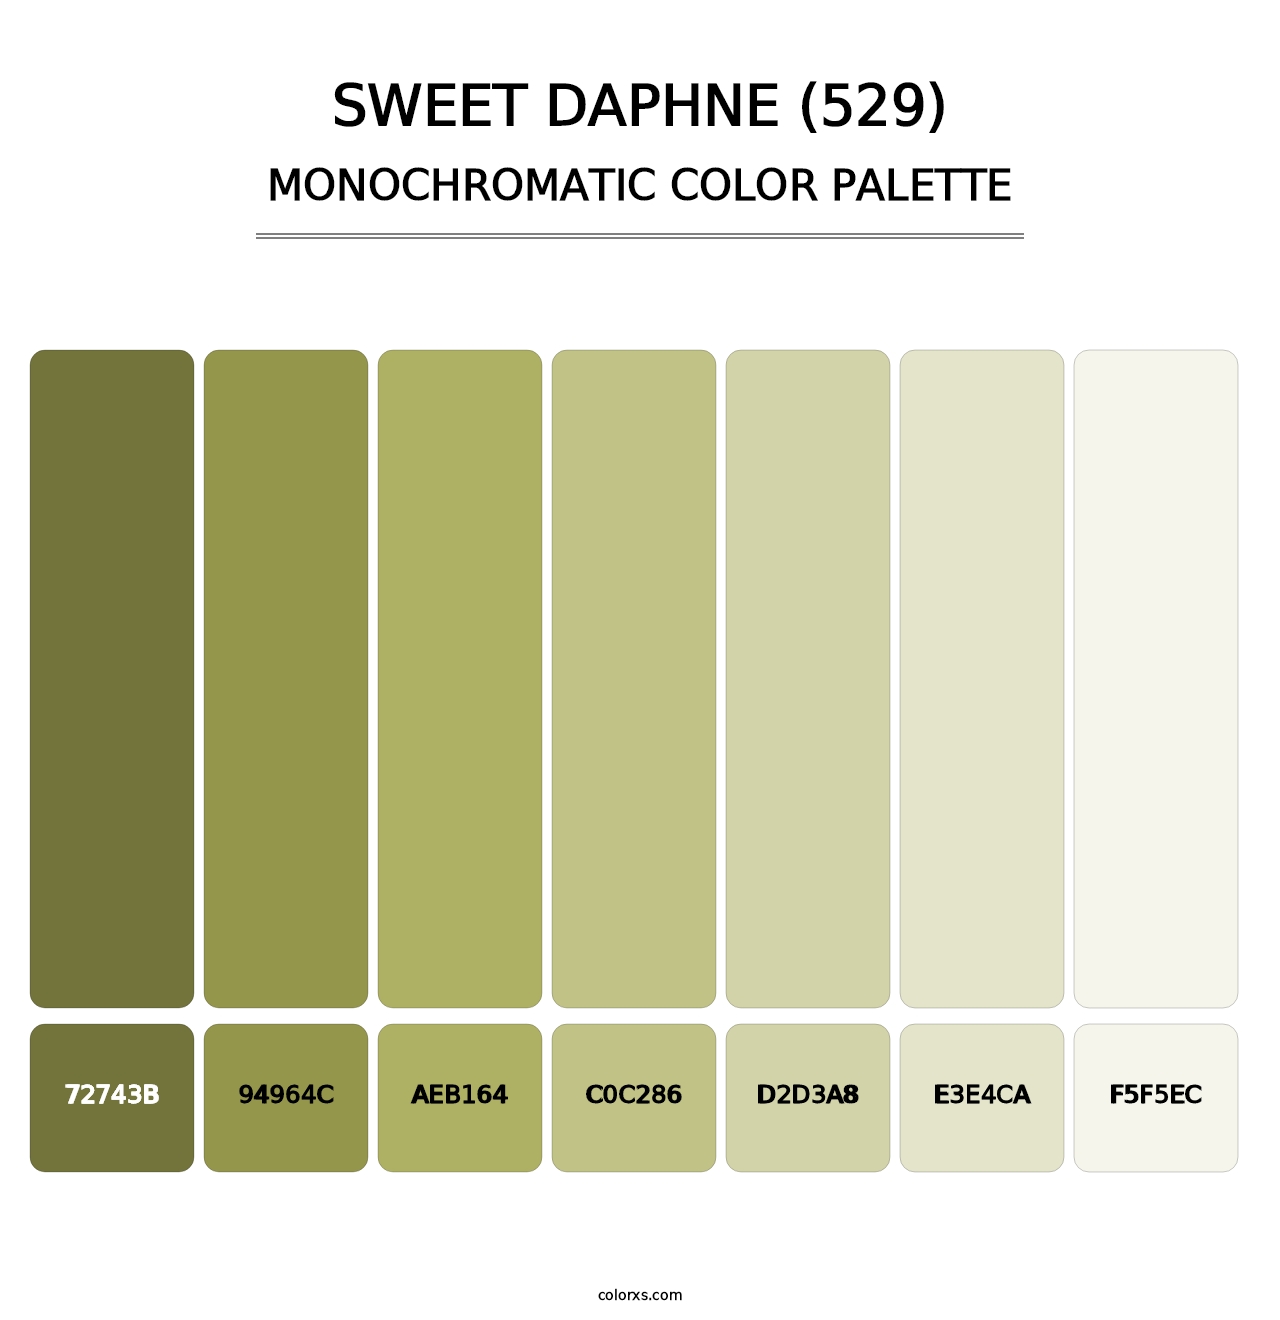 Sweet Daphne (529) - Monochromatic Color Palette